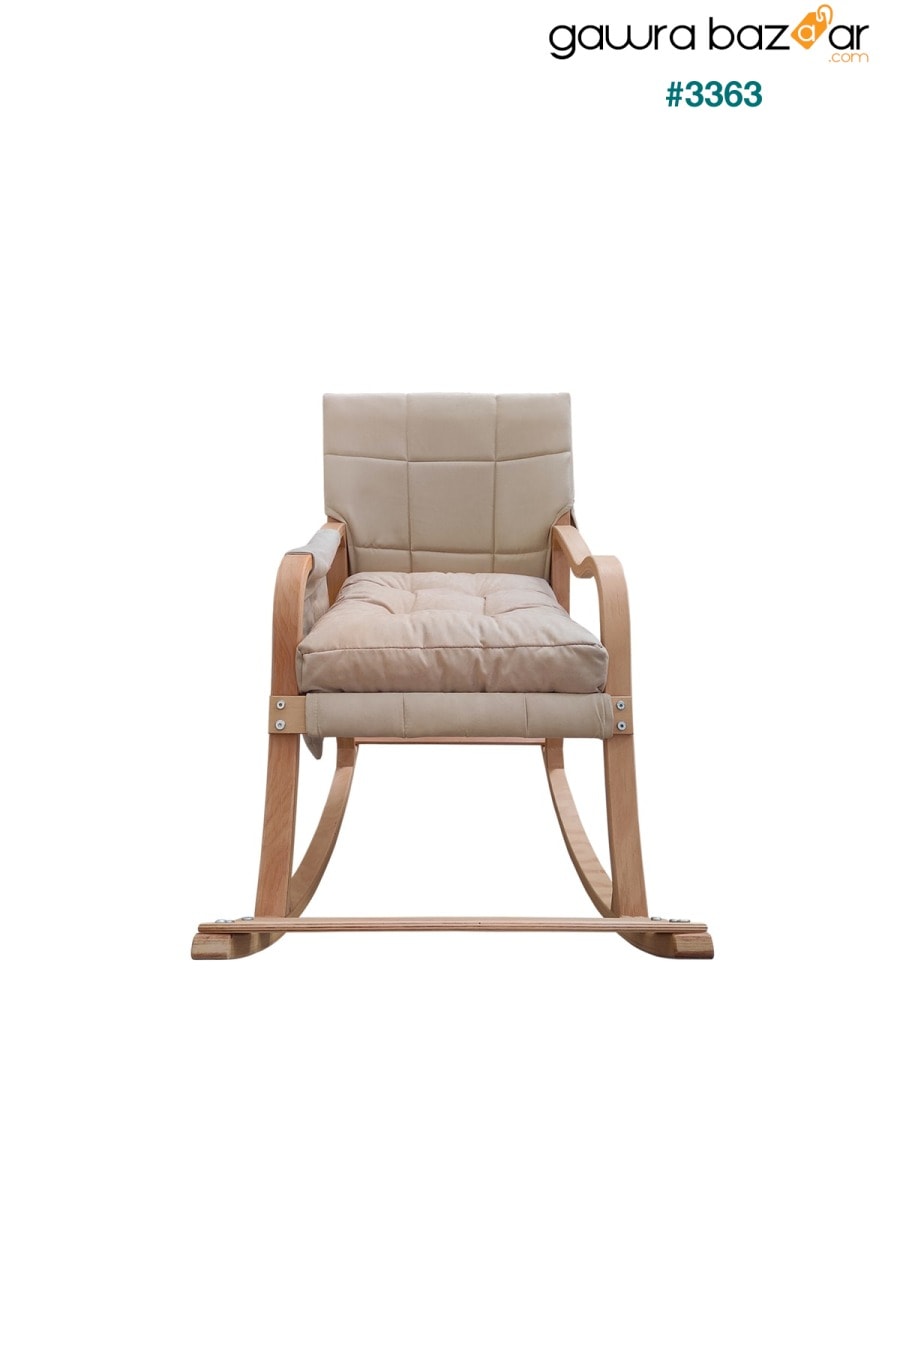 كرسي هزاز Paşa الخشبي الطويل وكرسي الراحة الطبيعي كريم Mobildeco 2